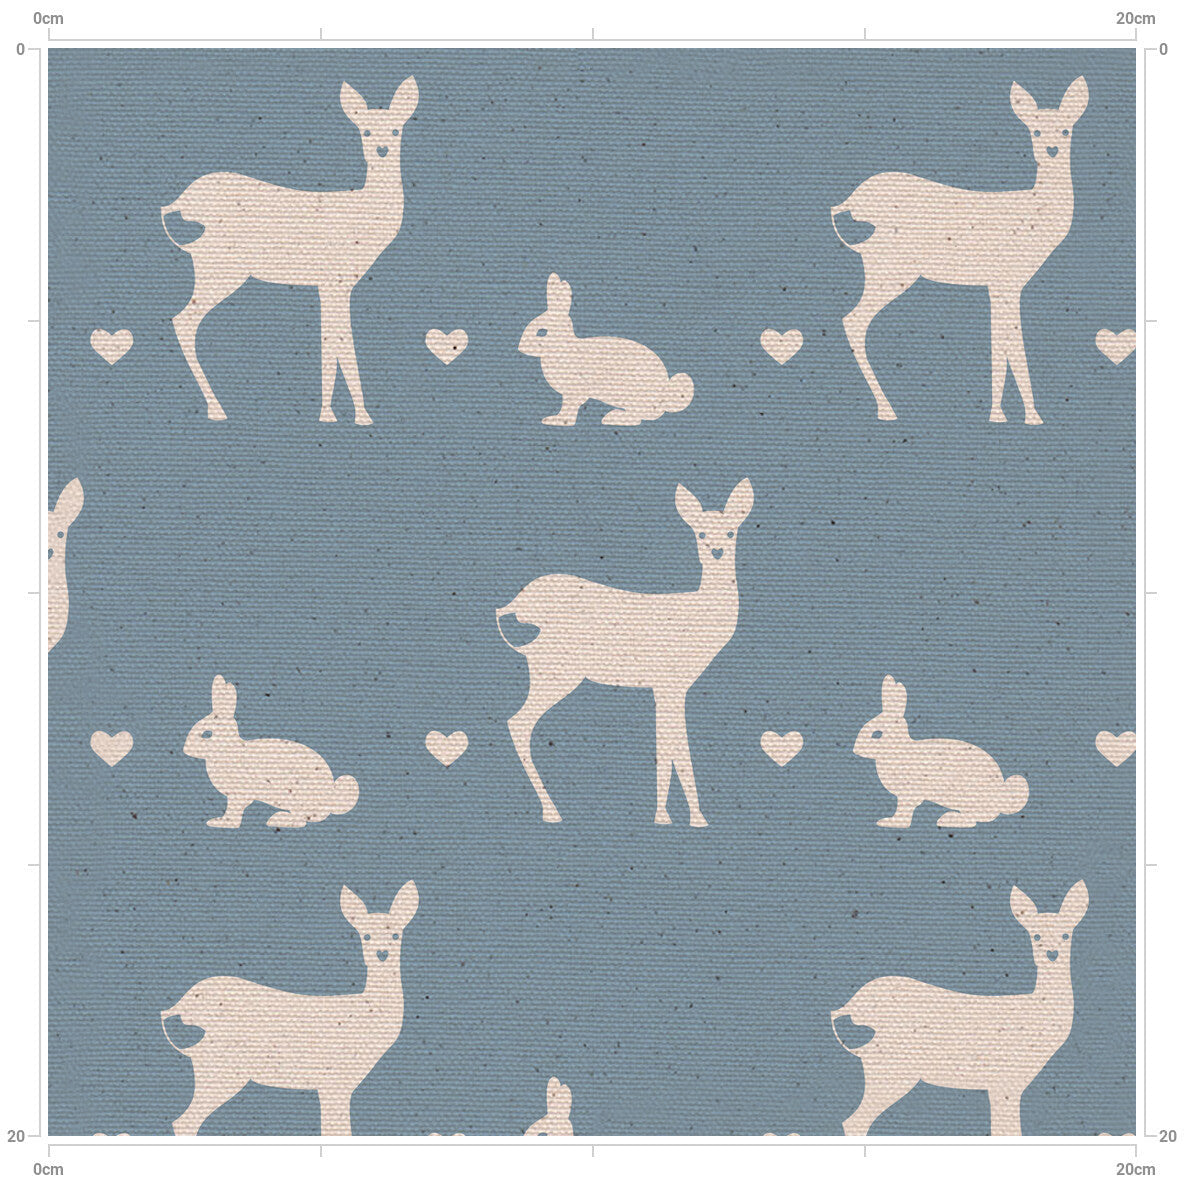 Deer & Rabbit Solid Background